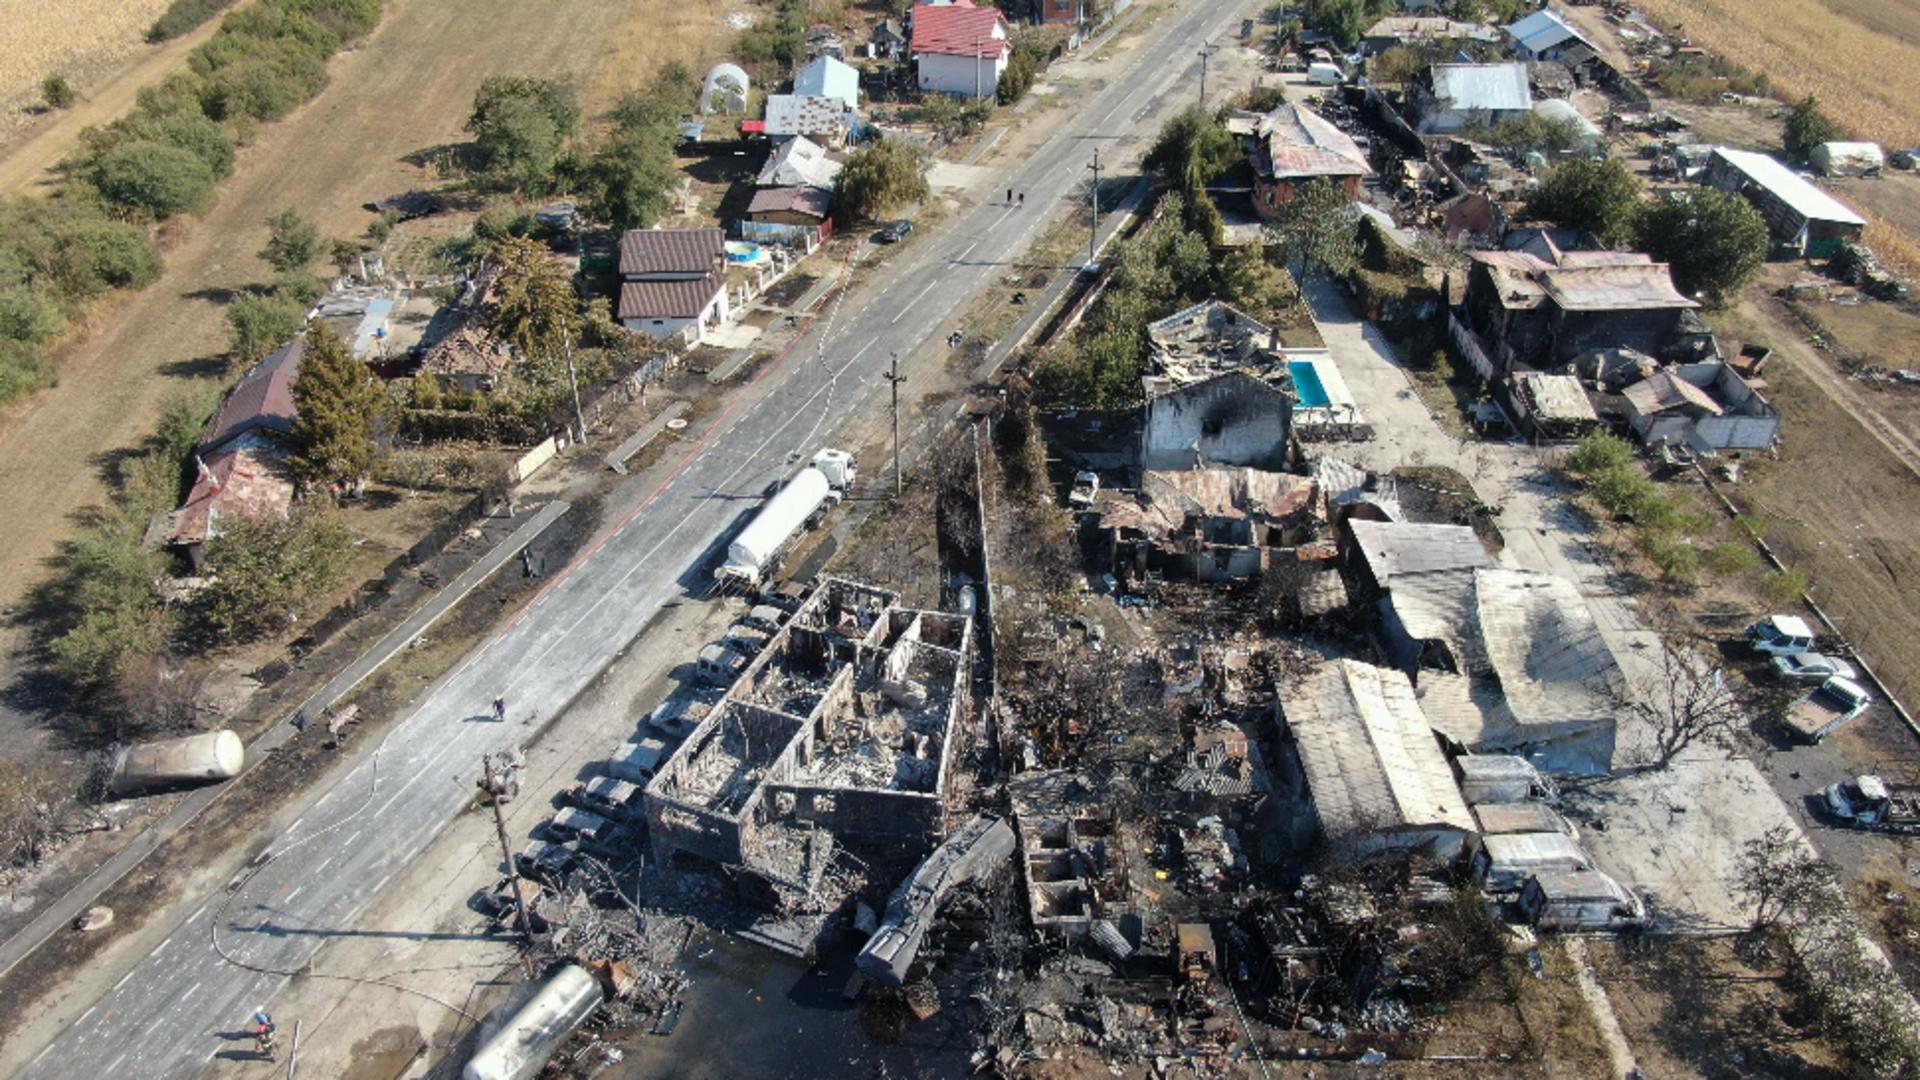 Guvernul pregătește despăgubiri pentru victimele dezastrului de la Cernavodă. Oamenii sunt disperați: nici măcar nu cunosc dimensiunea dezastrului